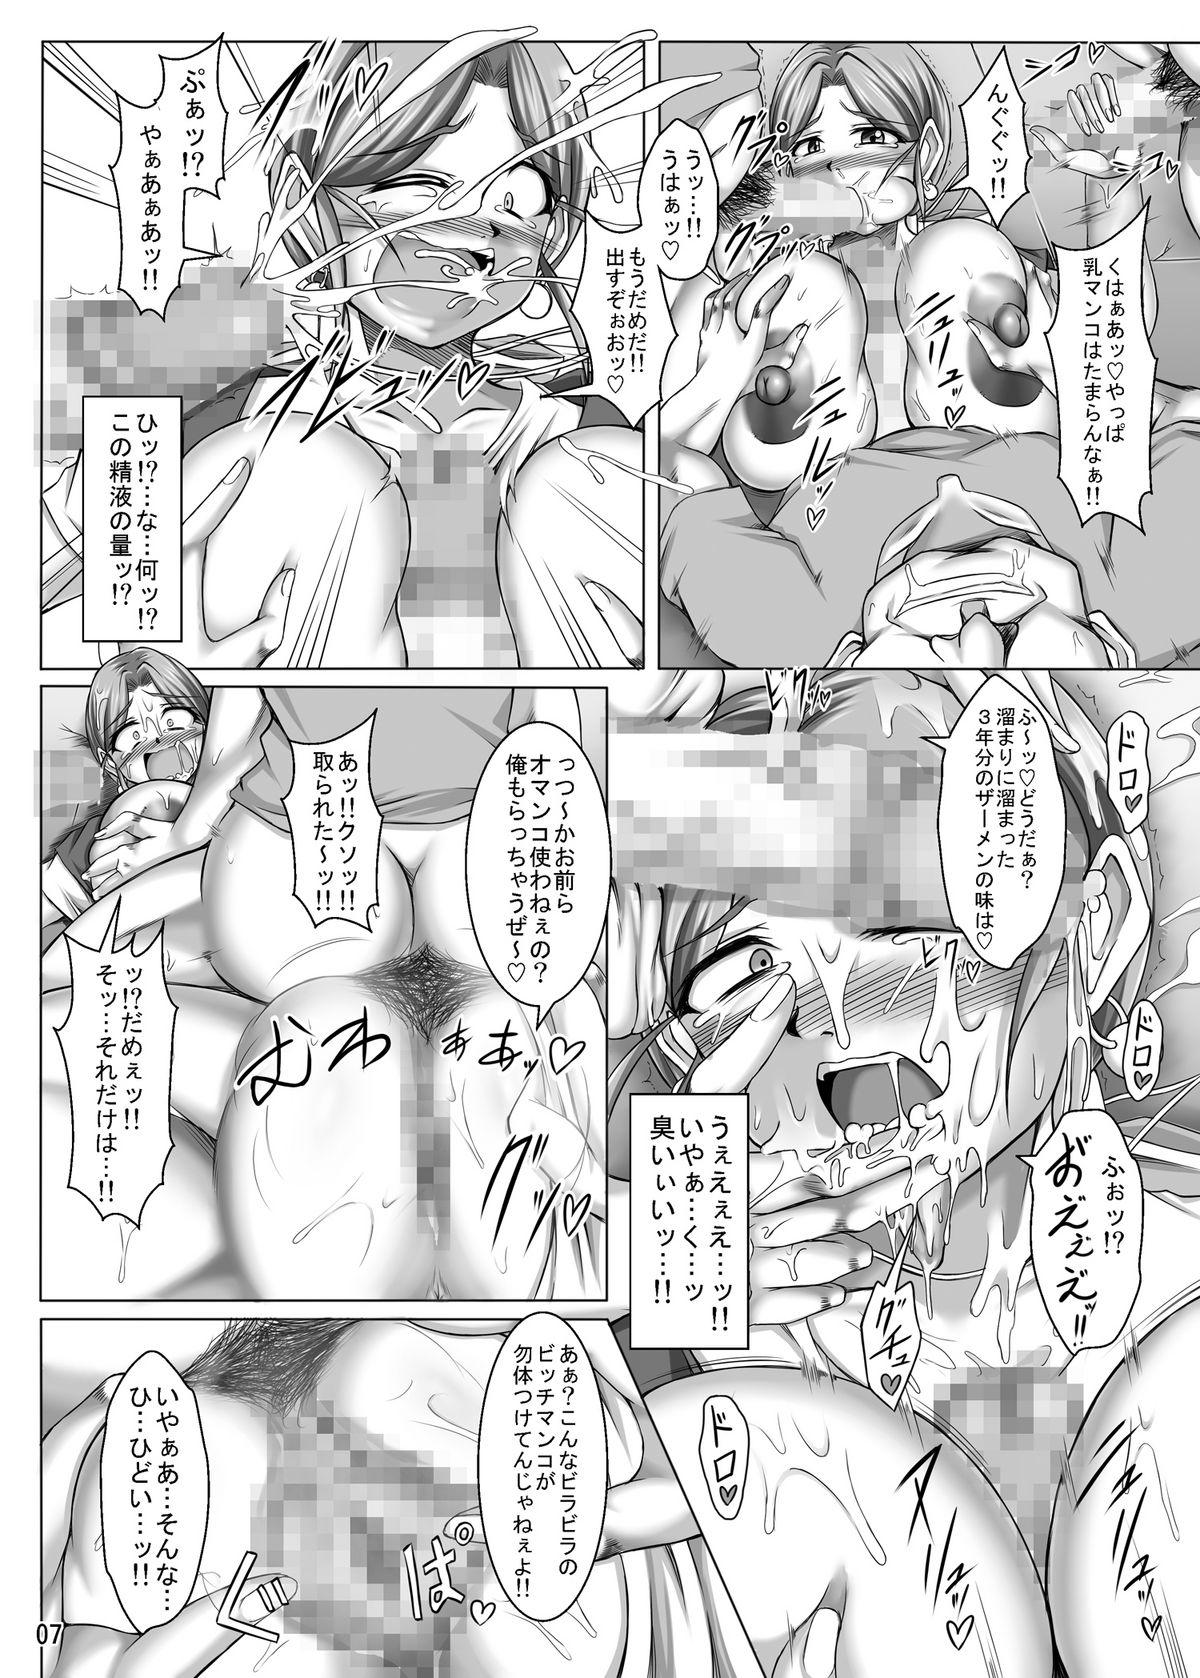 Sem Camisinha Toruneko Fujin Nene 37 Dannani himitsu no rougoku sontsukuri - Dragon quest iv Banheiro - Page 7